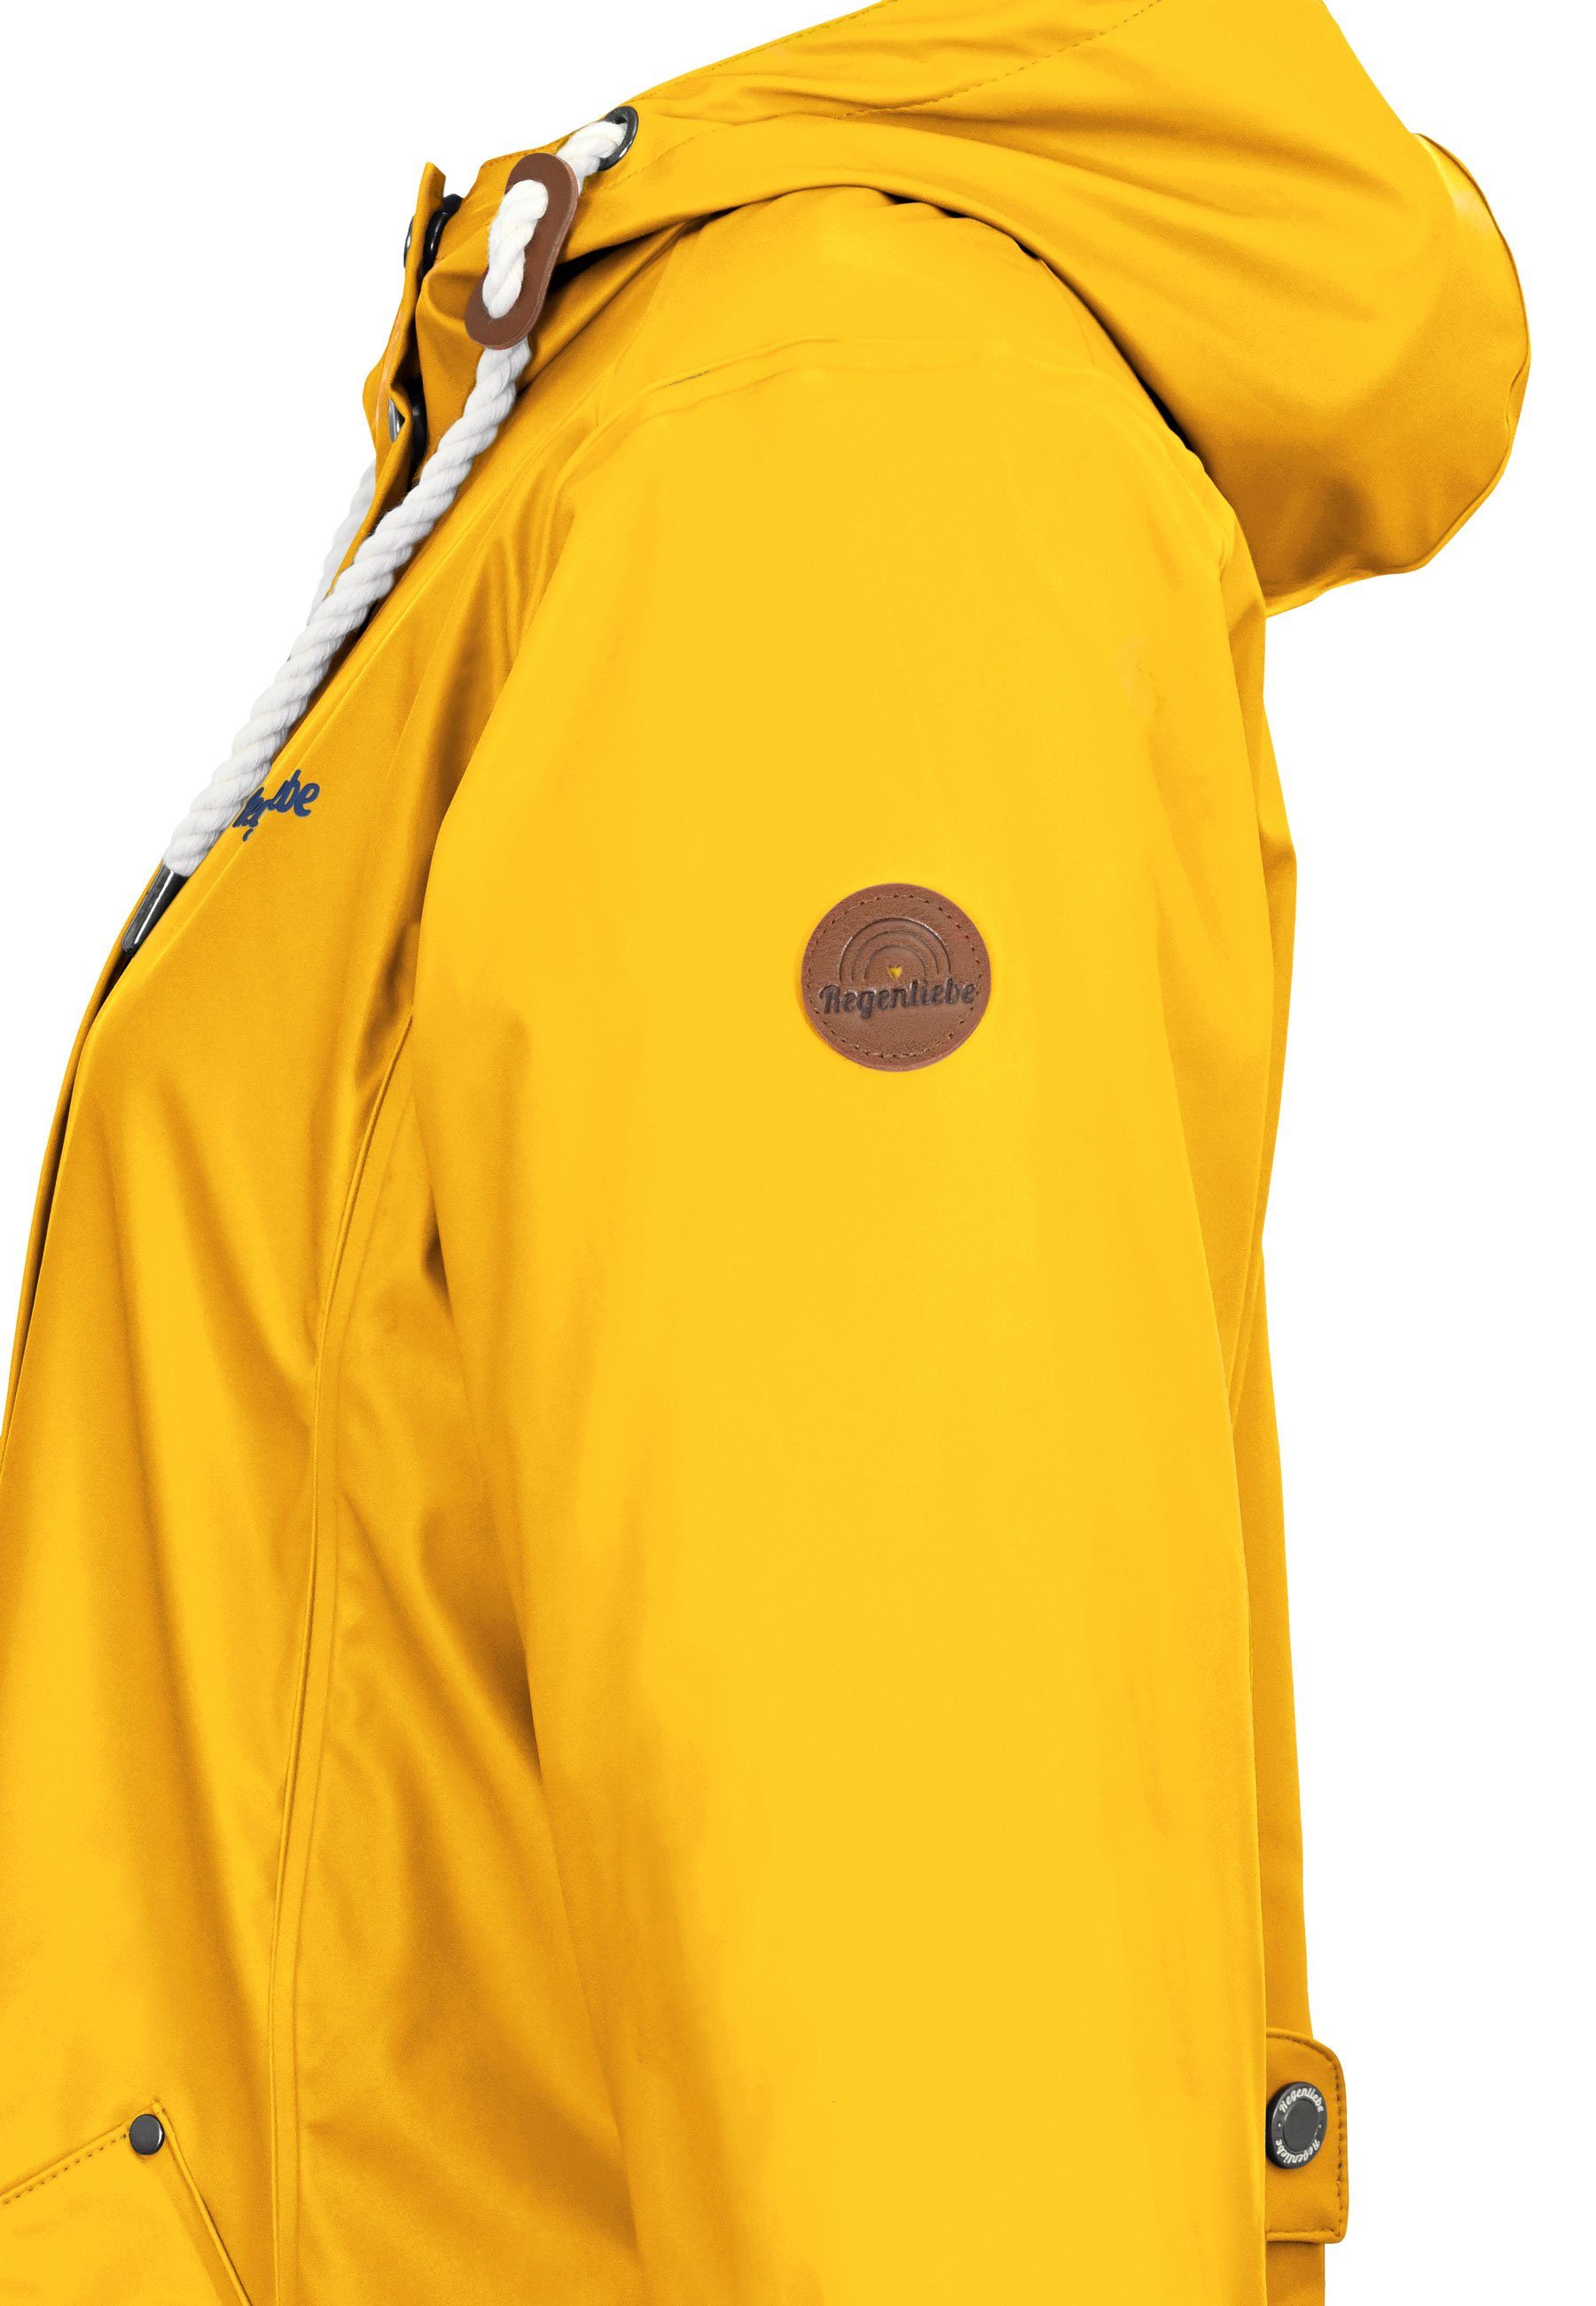 Regenliebe Regenjacke Friesennerz taillierter Regenmantel gelb verstellbaren mit Kapuze